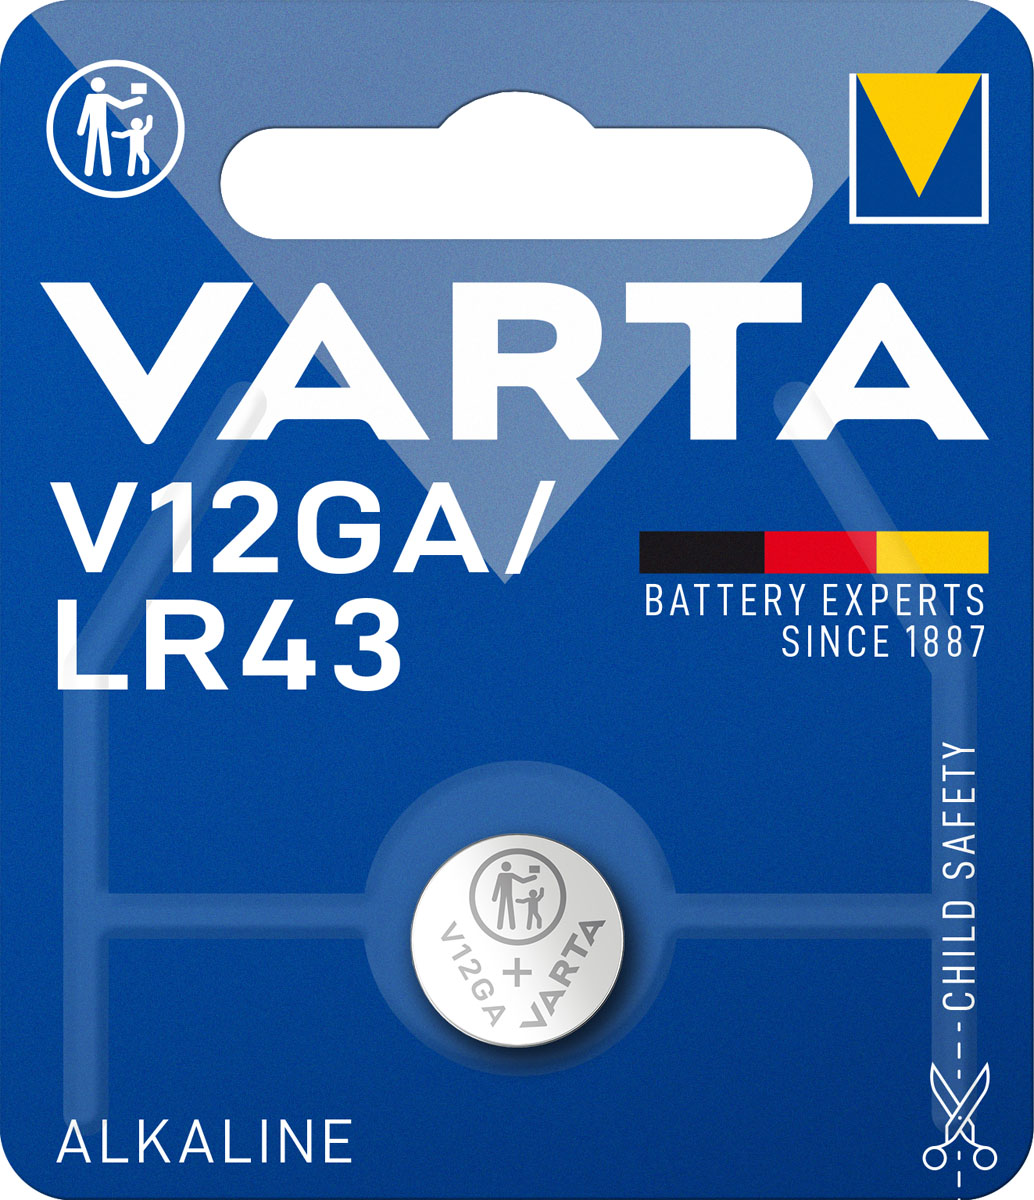 Varta Knopfzelle V12GA LR43 1,5V (1er Blister)